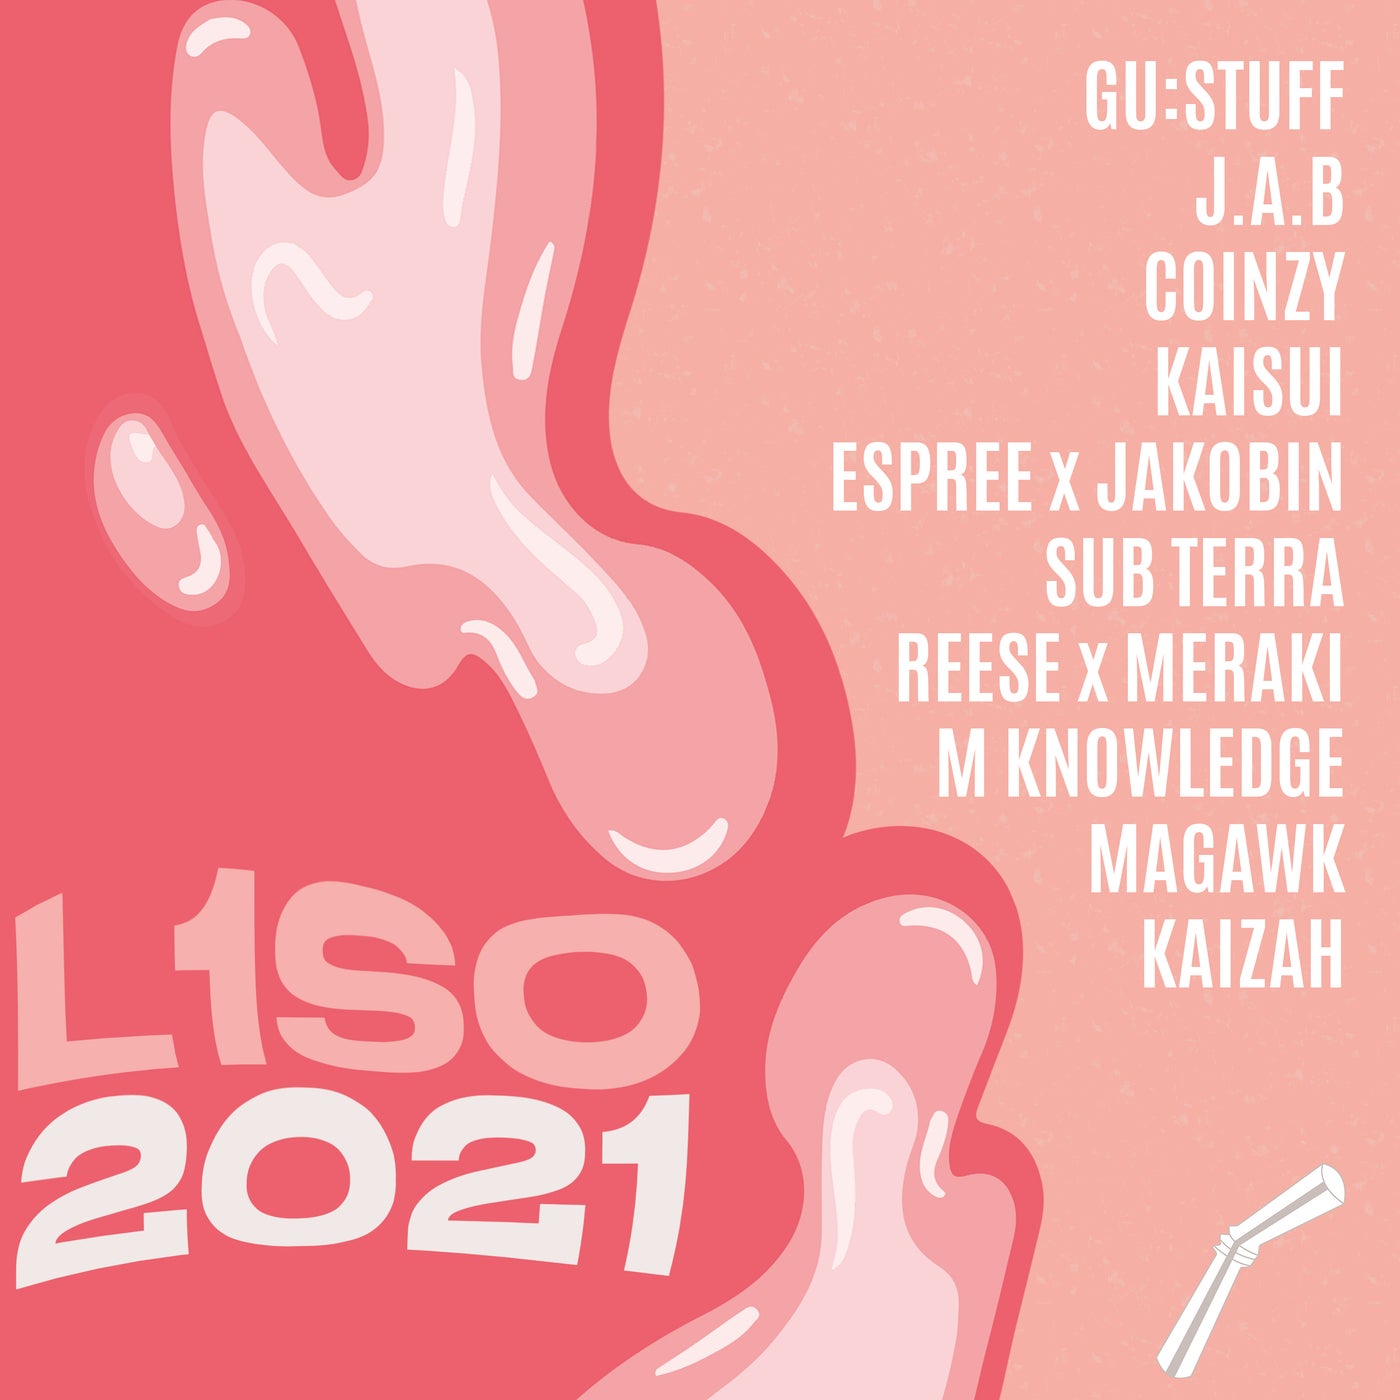 L1SO 2021